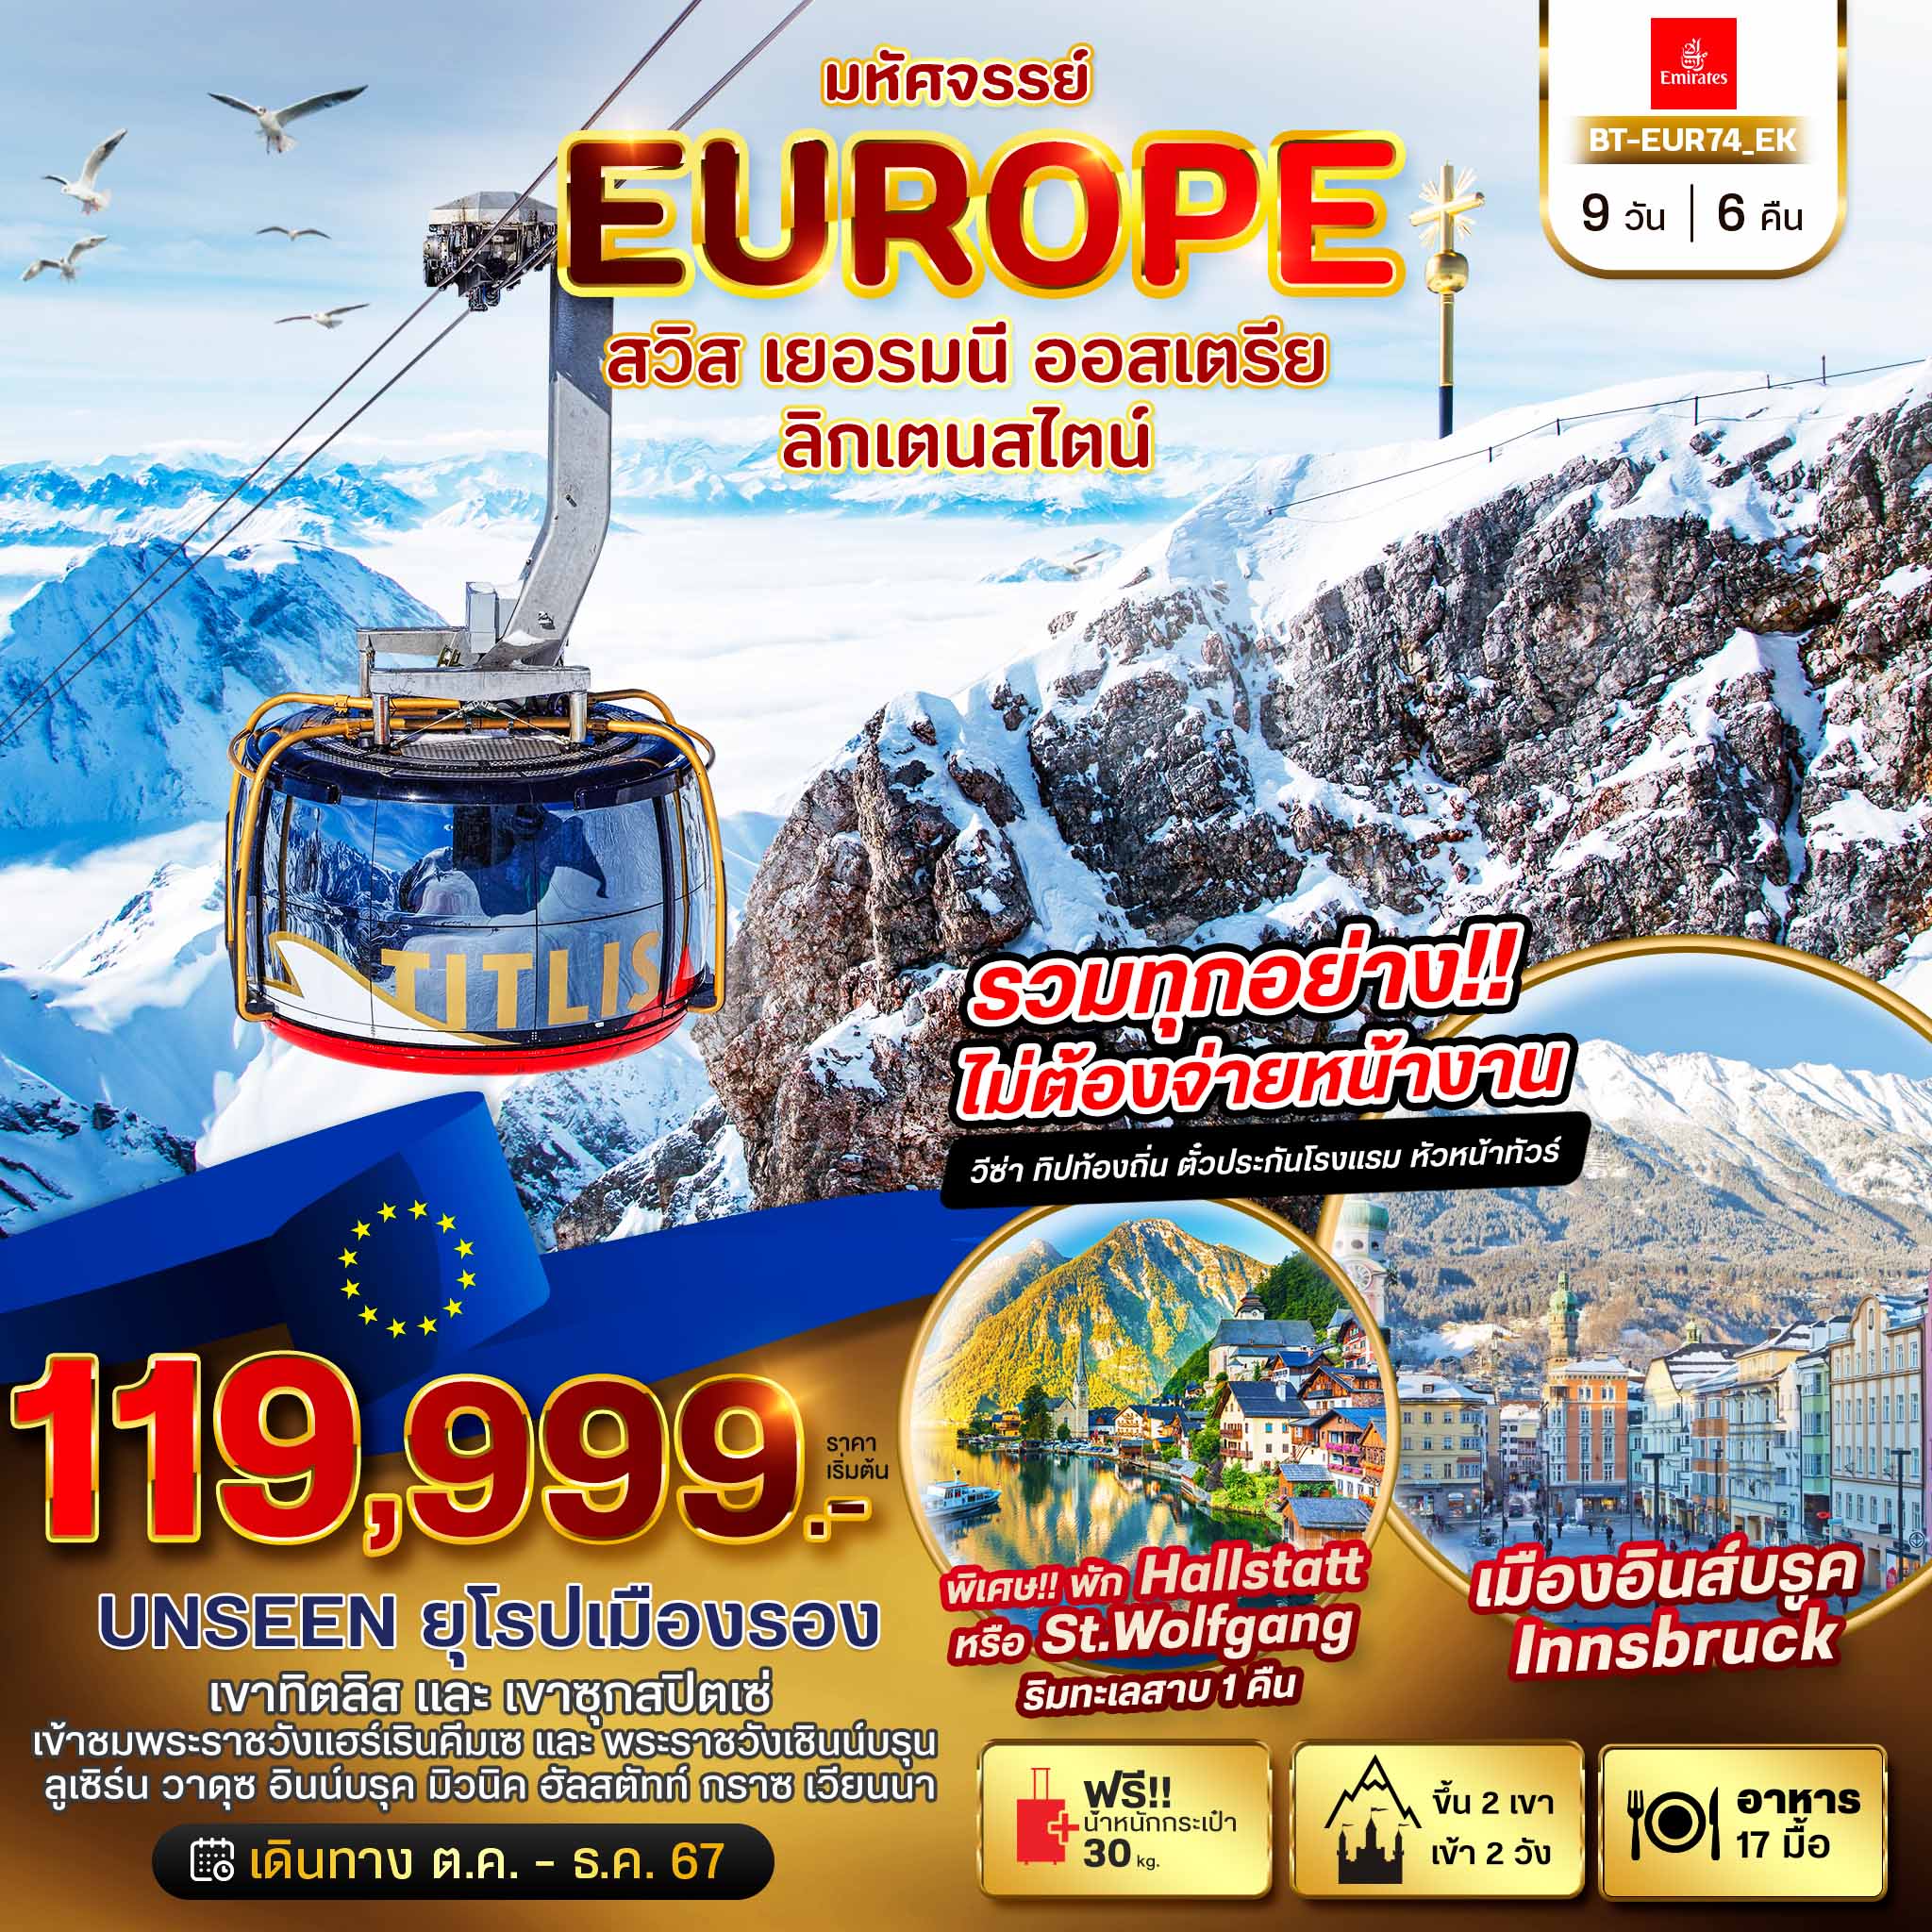 EUROPE สวิต เยอรมนี ออสเตรีย 9 วัน 6 คืน เดินทาง เมษายน 67 ราคา 119,999.- Emirates Airline (EK)